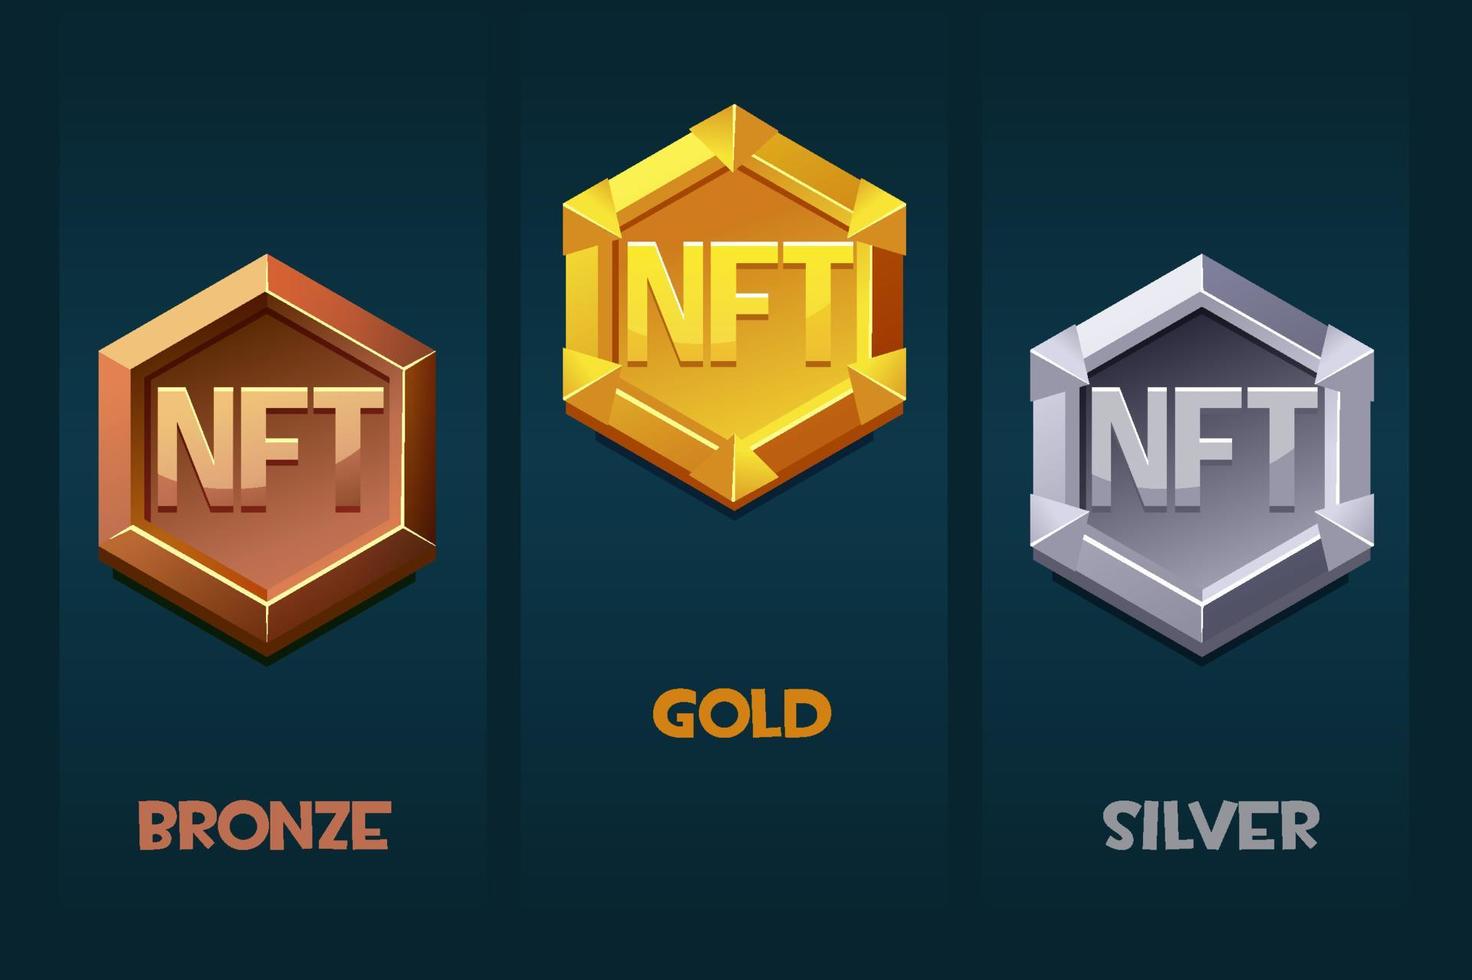 nft-awardbadge voor gamebronnen in verschillende metalen. gouden, zilveren en bronzen award badge. cryptocurrency, nft-token internetvaluta van de toekomst. vector